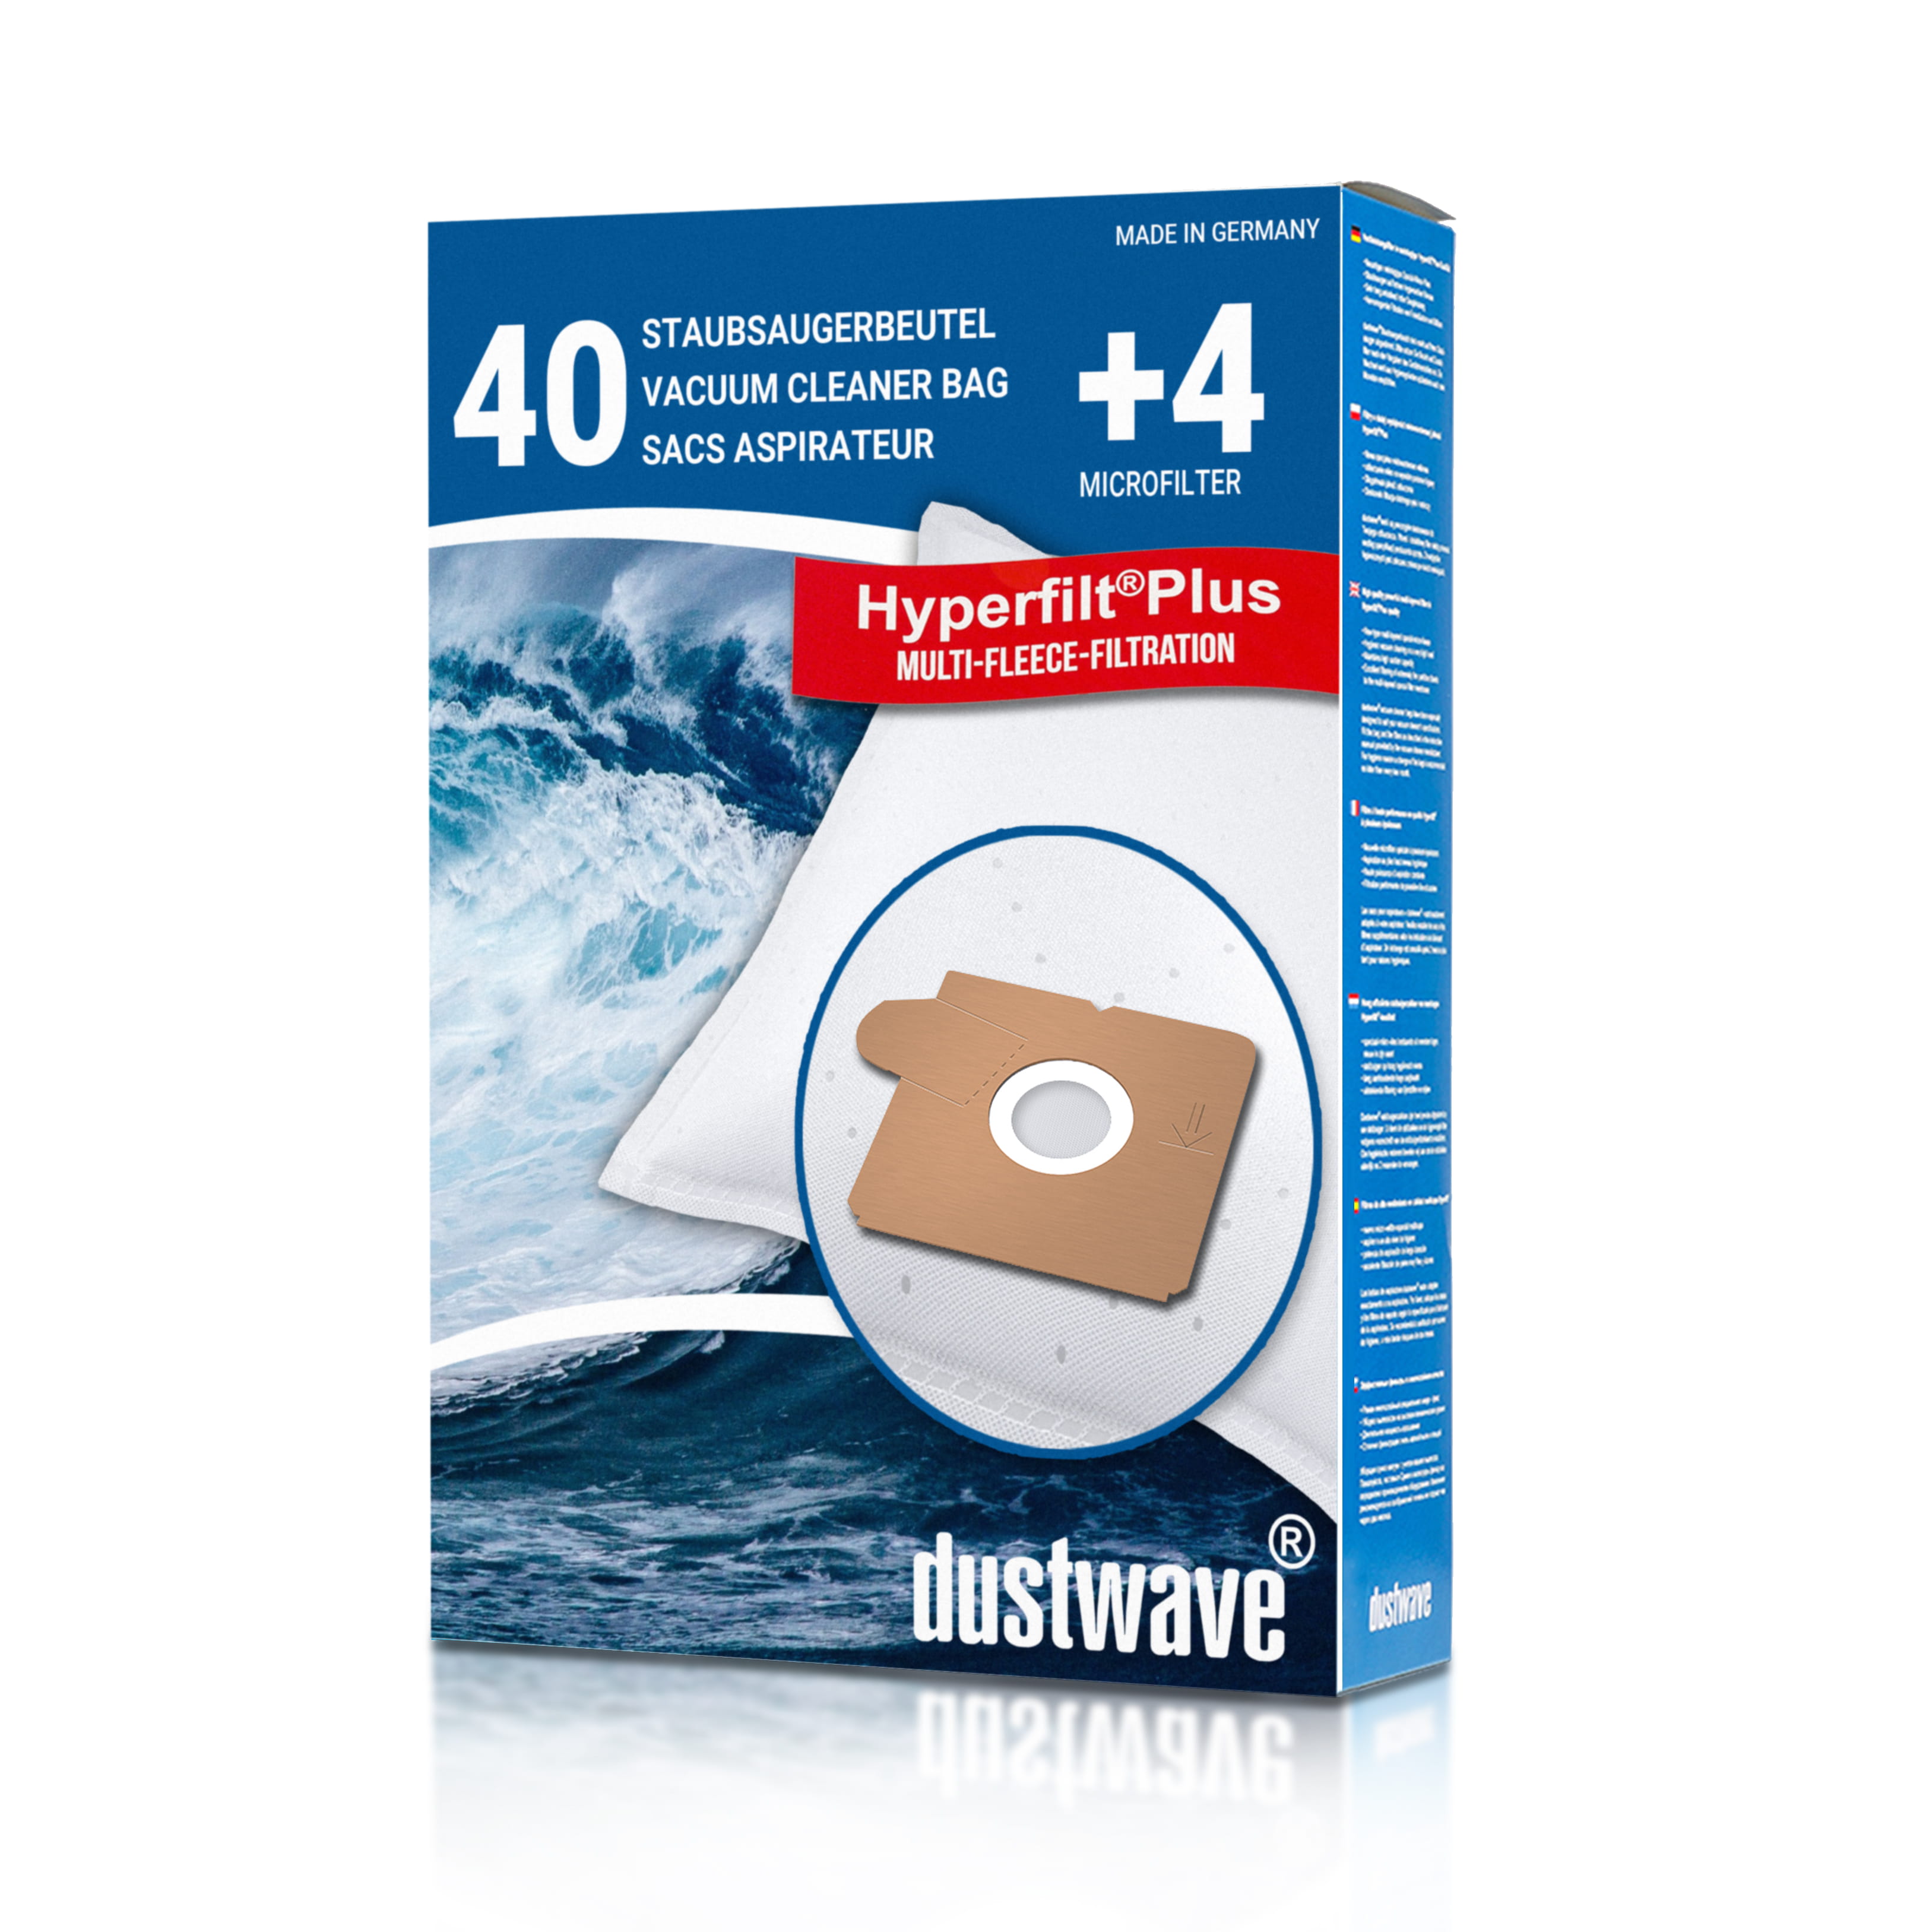 Dustwave® 40 Staubsaugerbeutel für AEG Smart 170.0 - hocheffizient mit Hygieneverschluss - Made in Germany